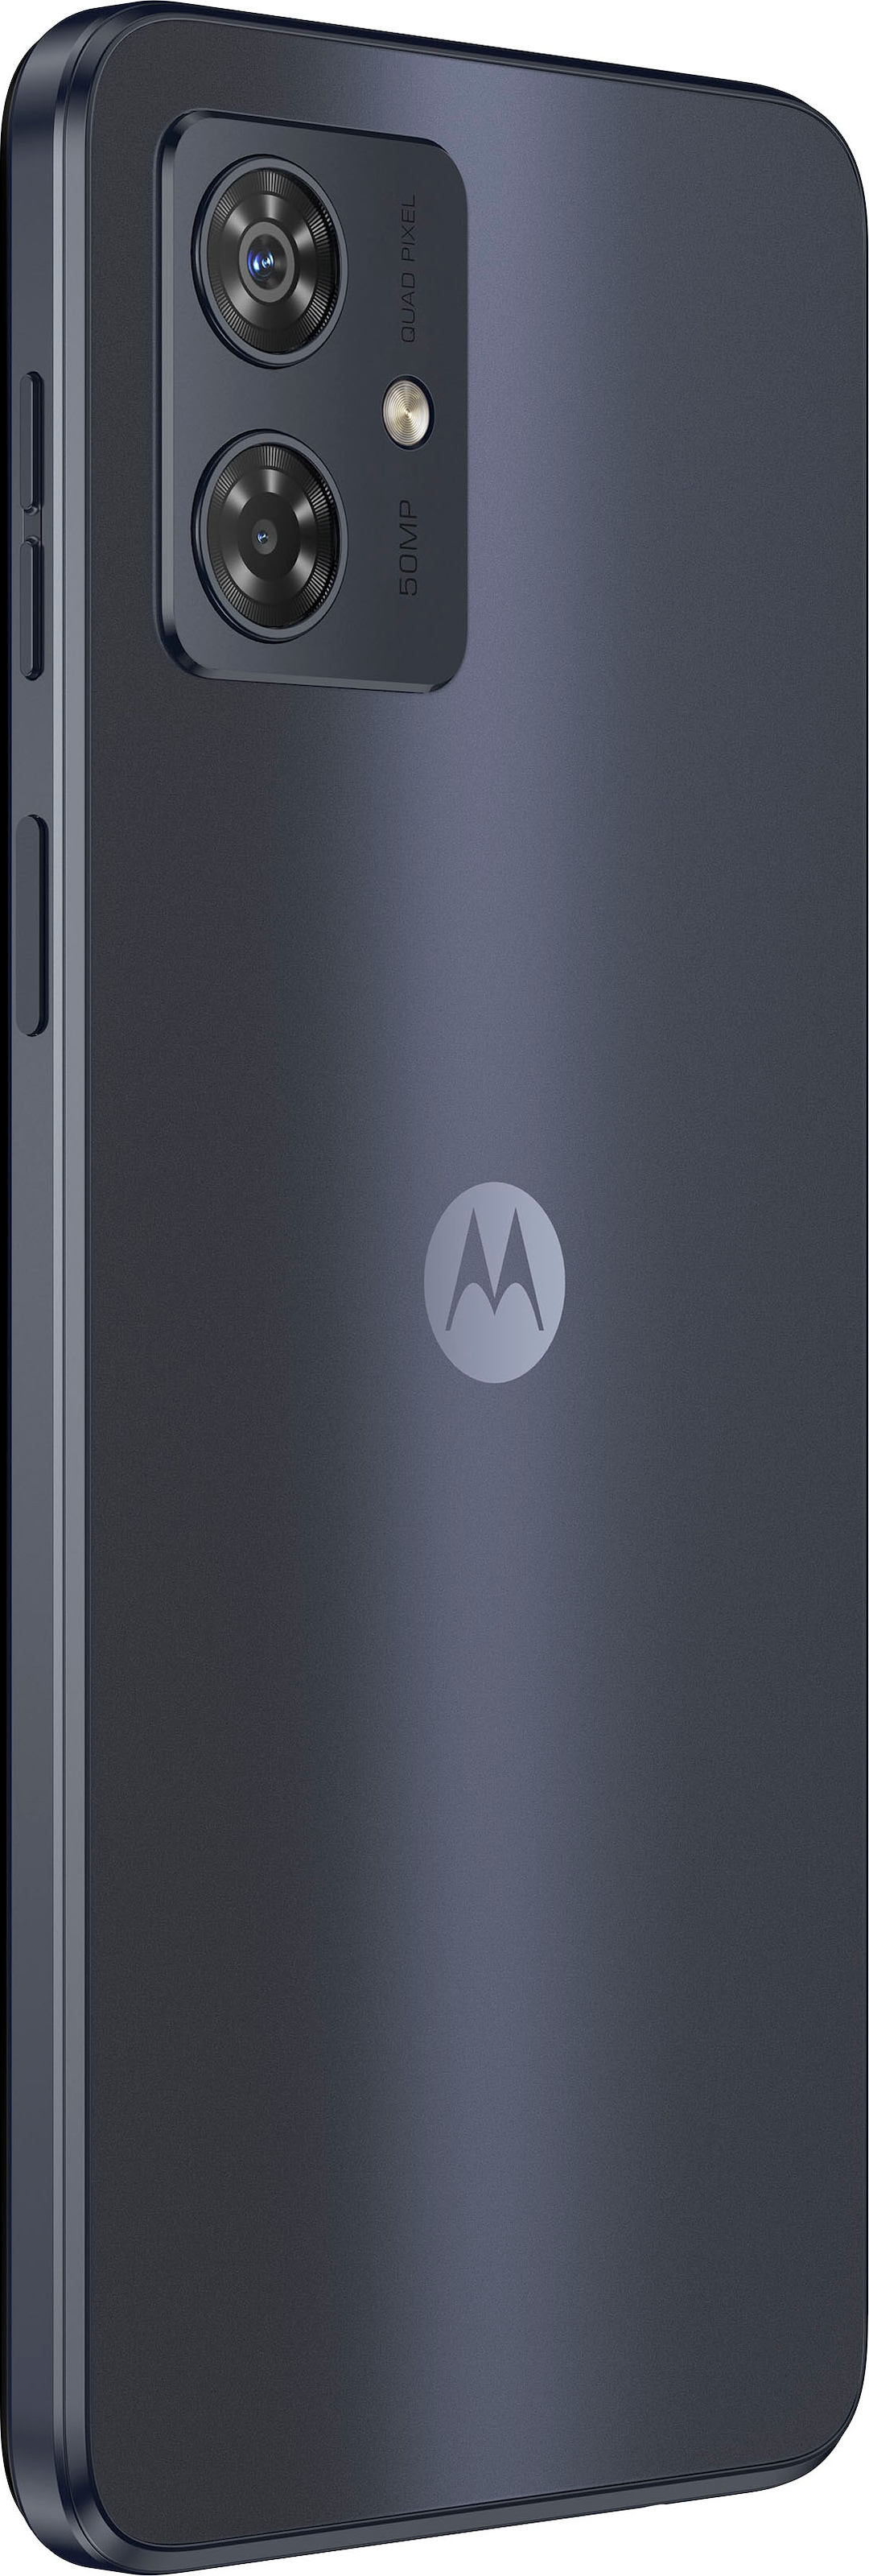 Motorola Smartphone »MOTOROLA moto g54«, mint grün, 16,51 cm/6,5 Zoll, 256  GB Speicherplatz, 50 MP Kamera auf Raten bestellen